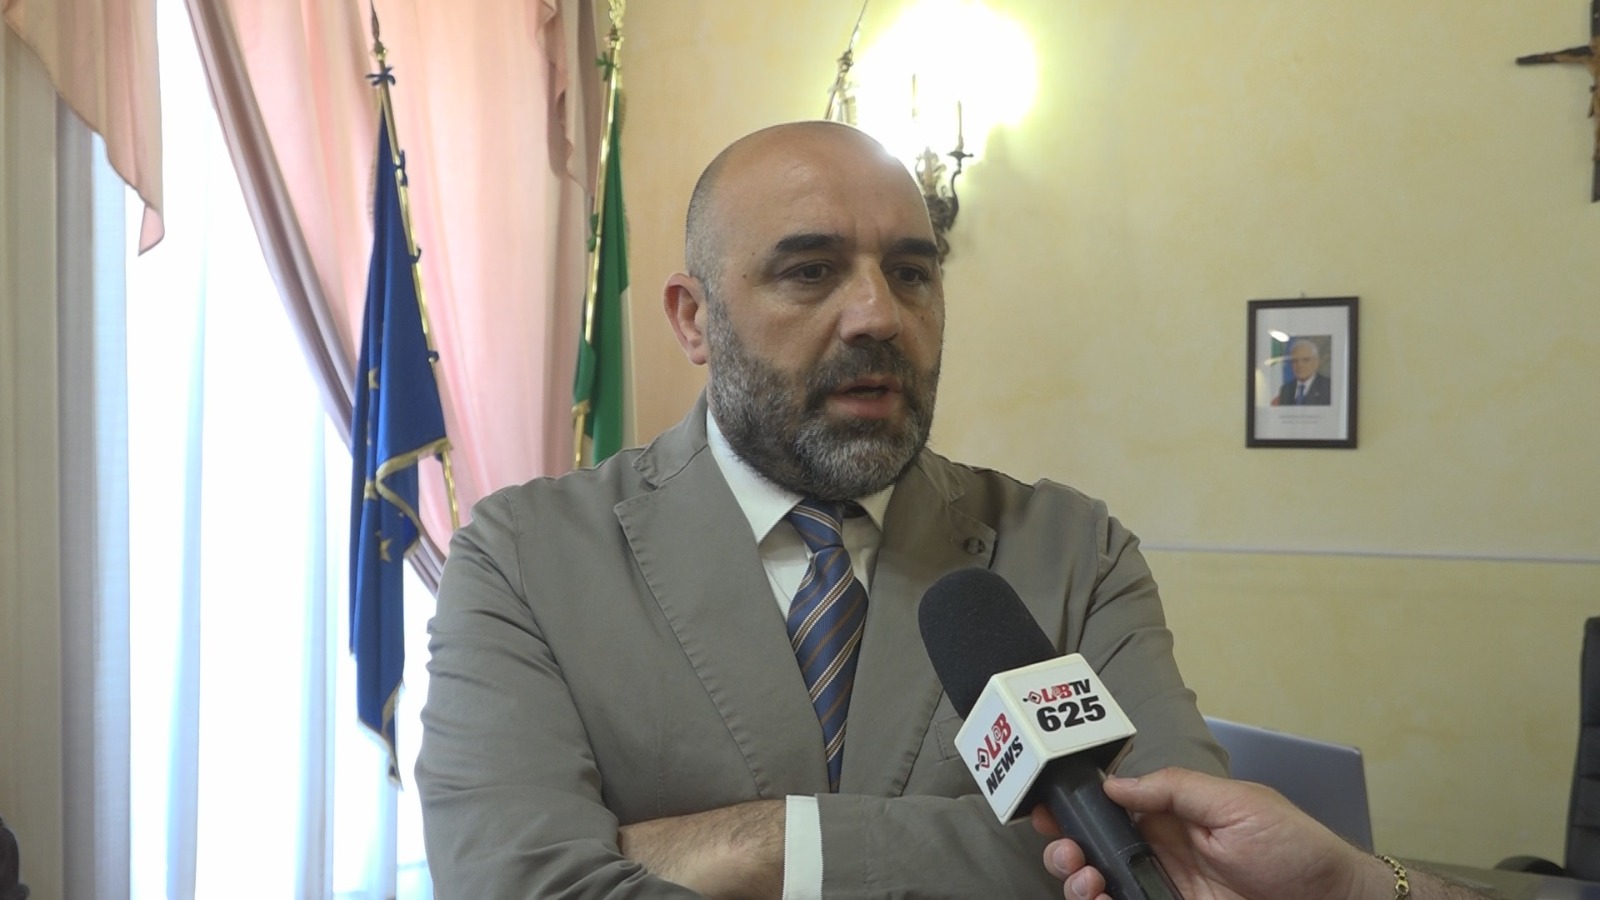 Avellino| Il presidente della Provincia Buonopane fa gli auguri ai neosindaci e ai consiglieri eletti in Irpinia